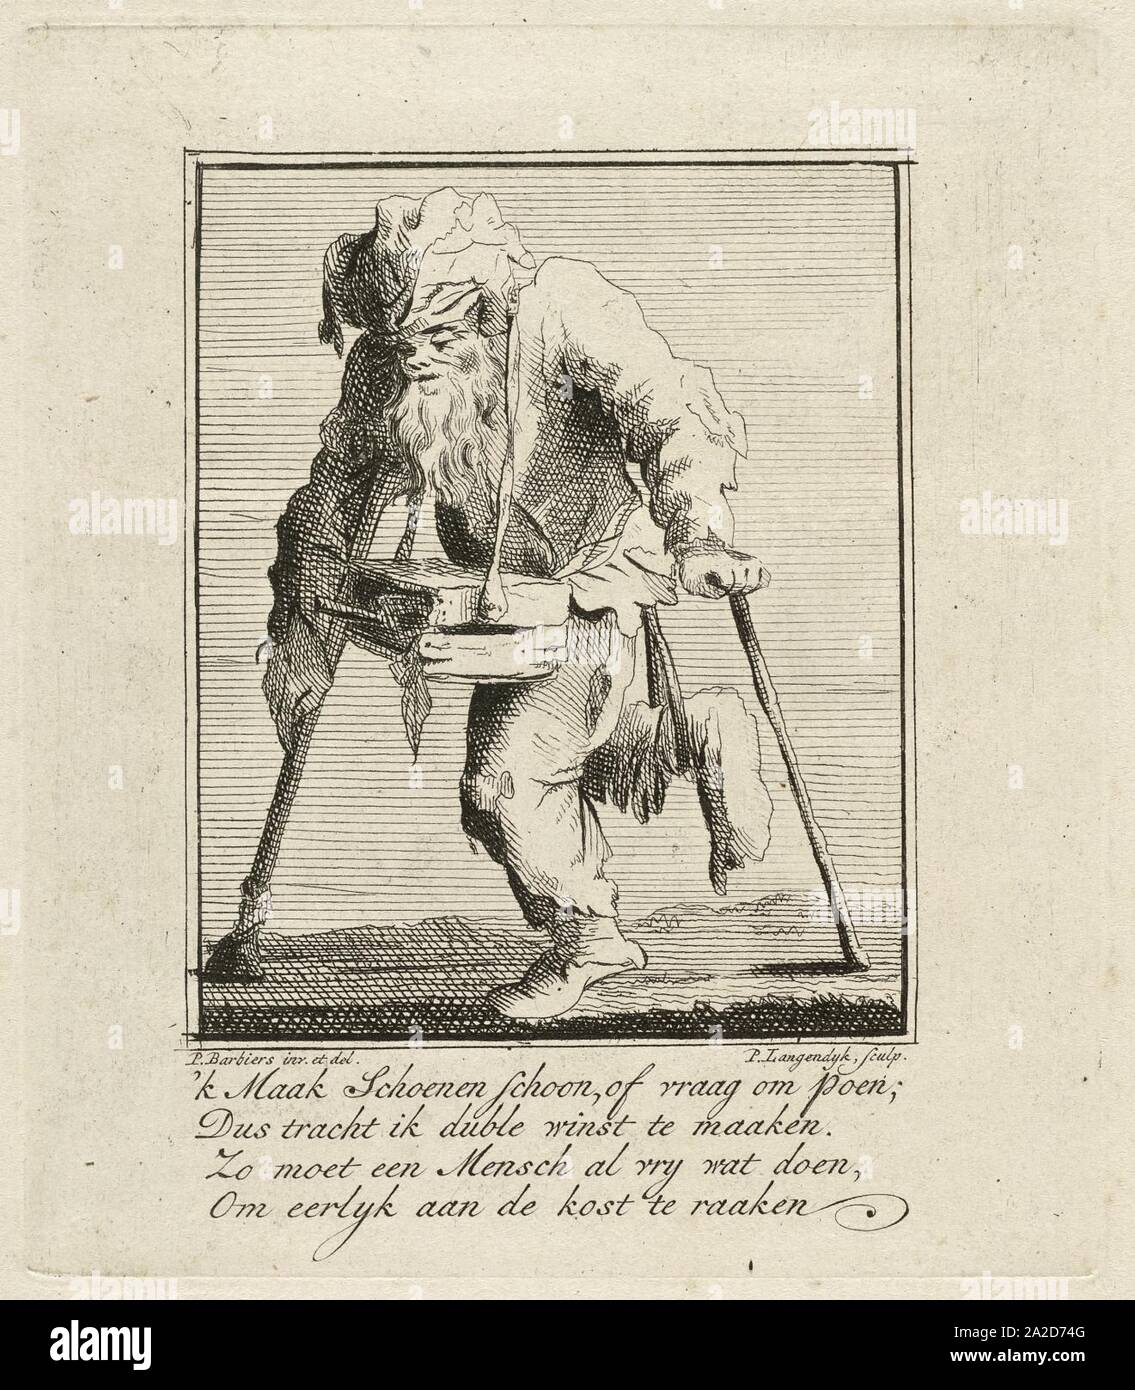 Een man beweegt zich met twee krukken voort en draagt een schoenpoetskistje om zijn nek, Stock Photo